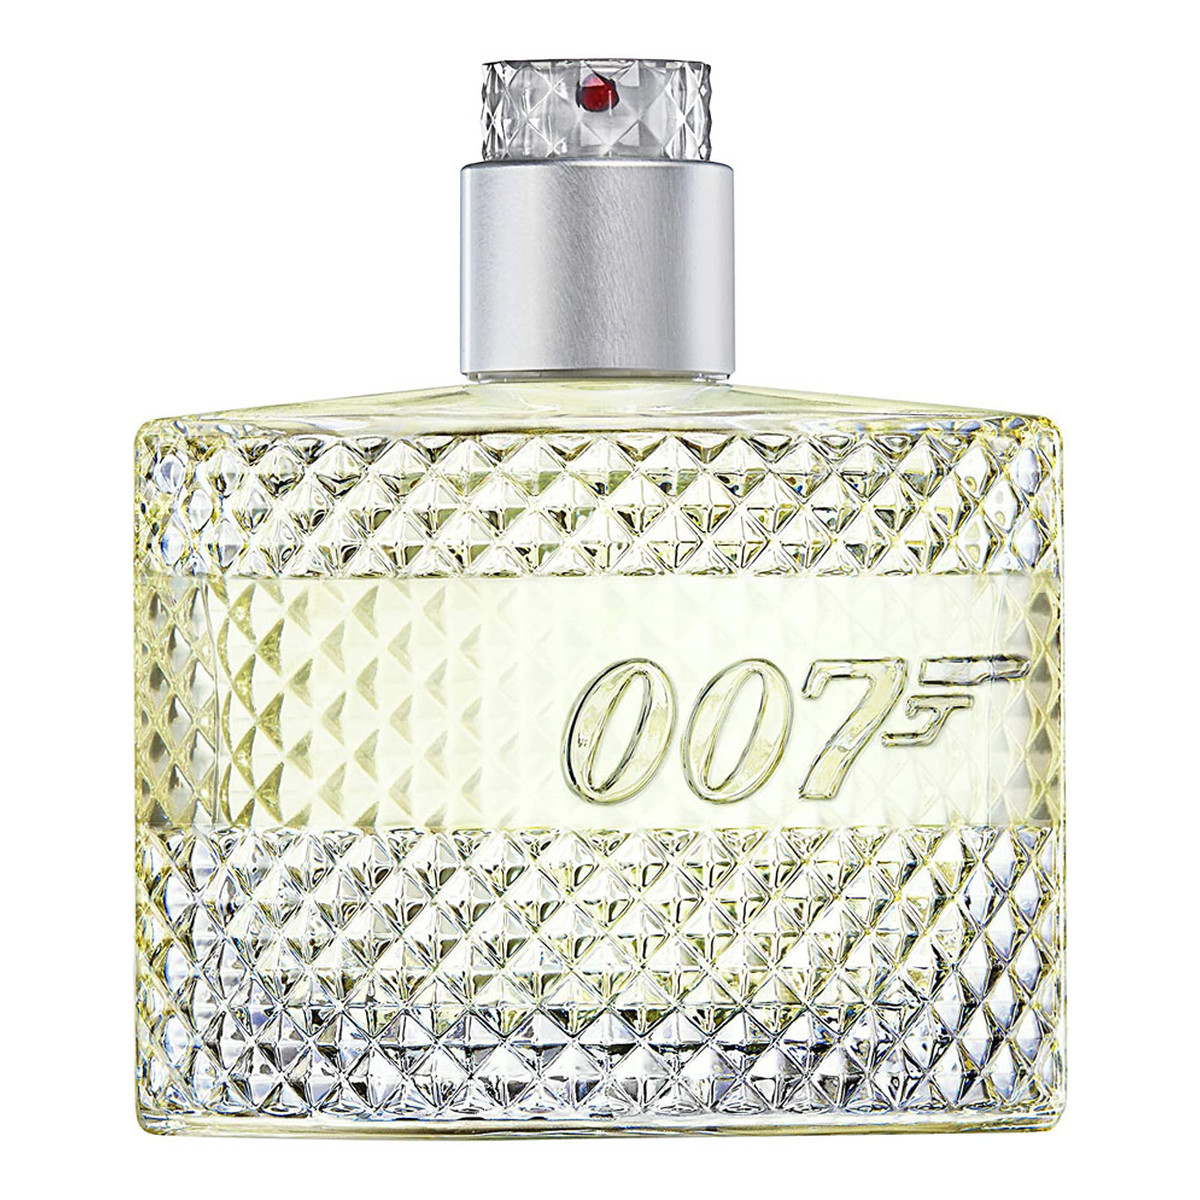 James Bond 007 007 Cologne Woda kolońska spray 50ml